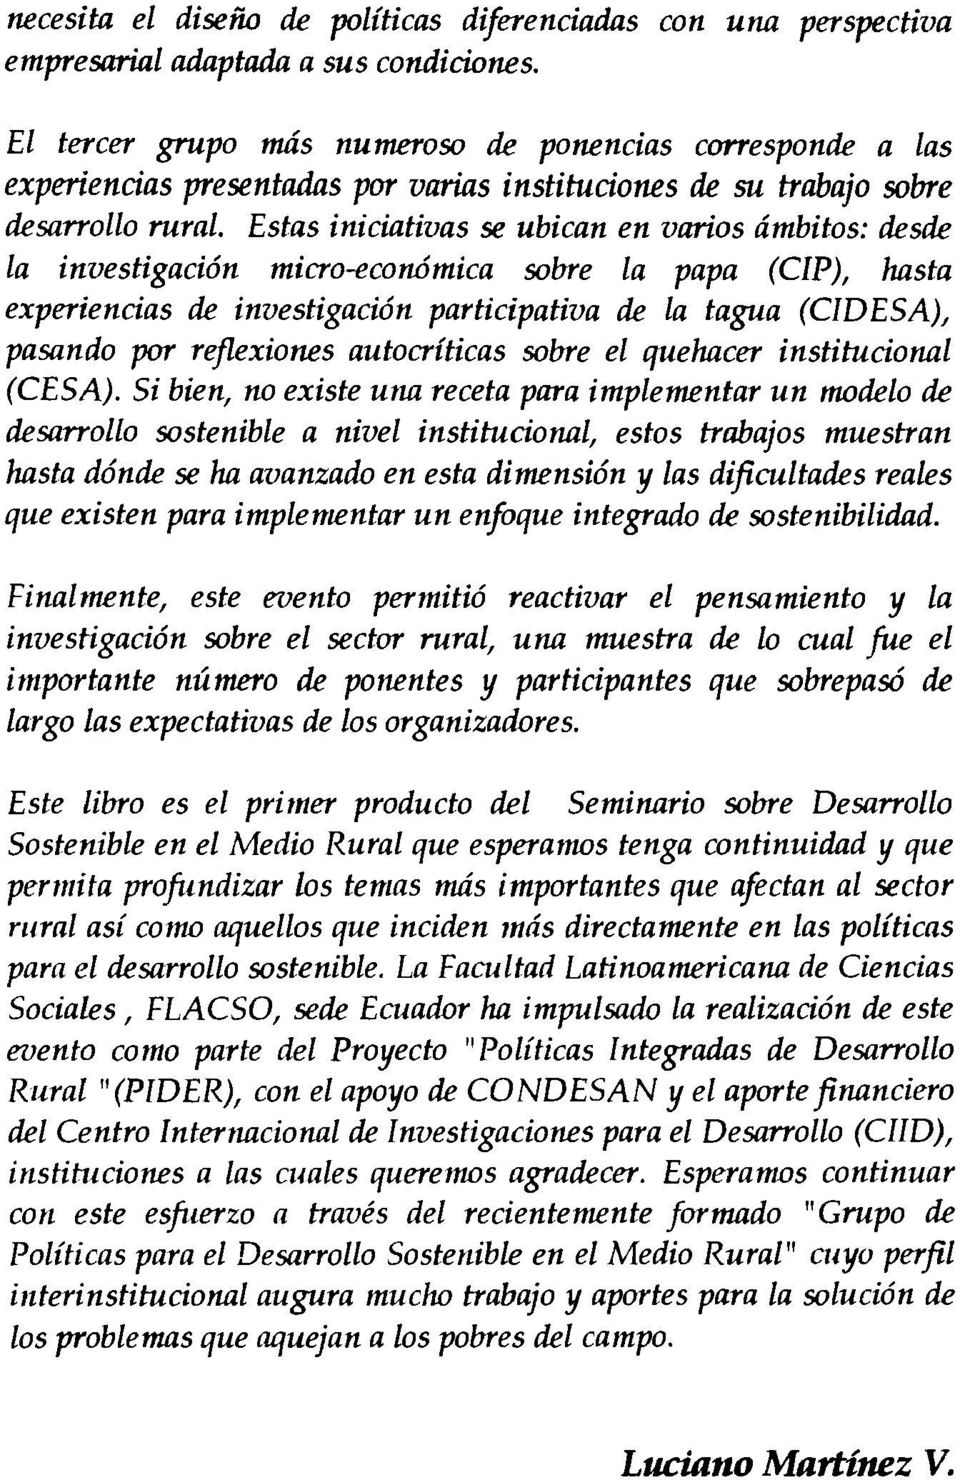 Estas iniciativas se ubican en varios dmbitos: desde La investigaci6n micro-economica sobre La papa (CIP), hasta experiencias de investigaci6n participativa de La tagua (CIDESA), pasando por